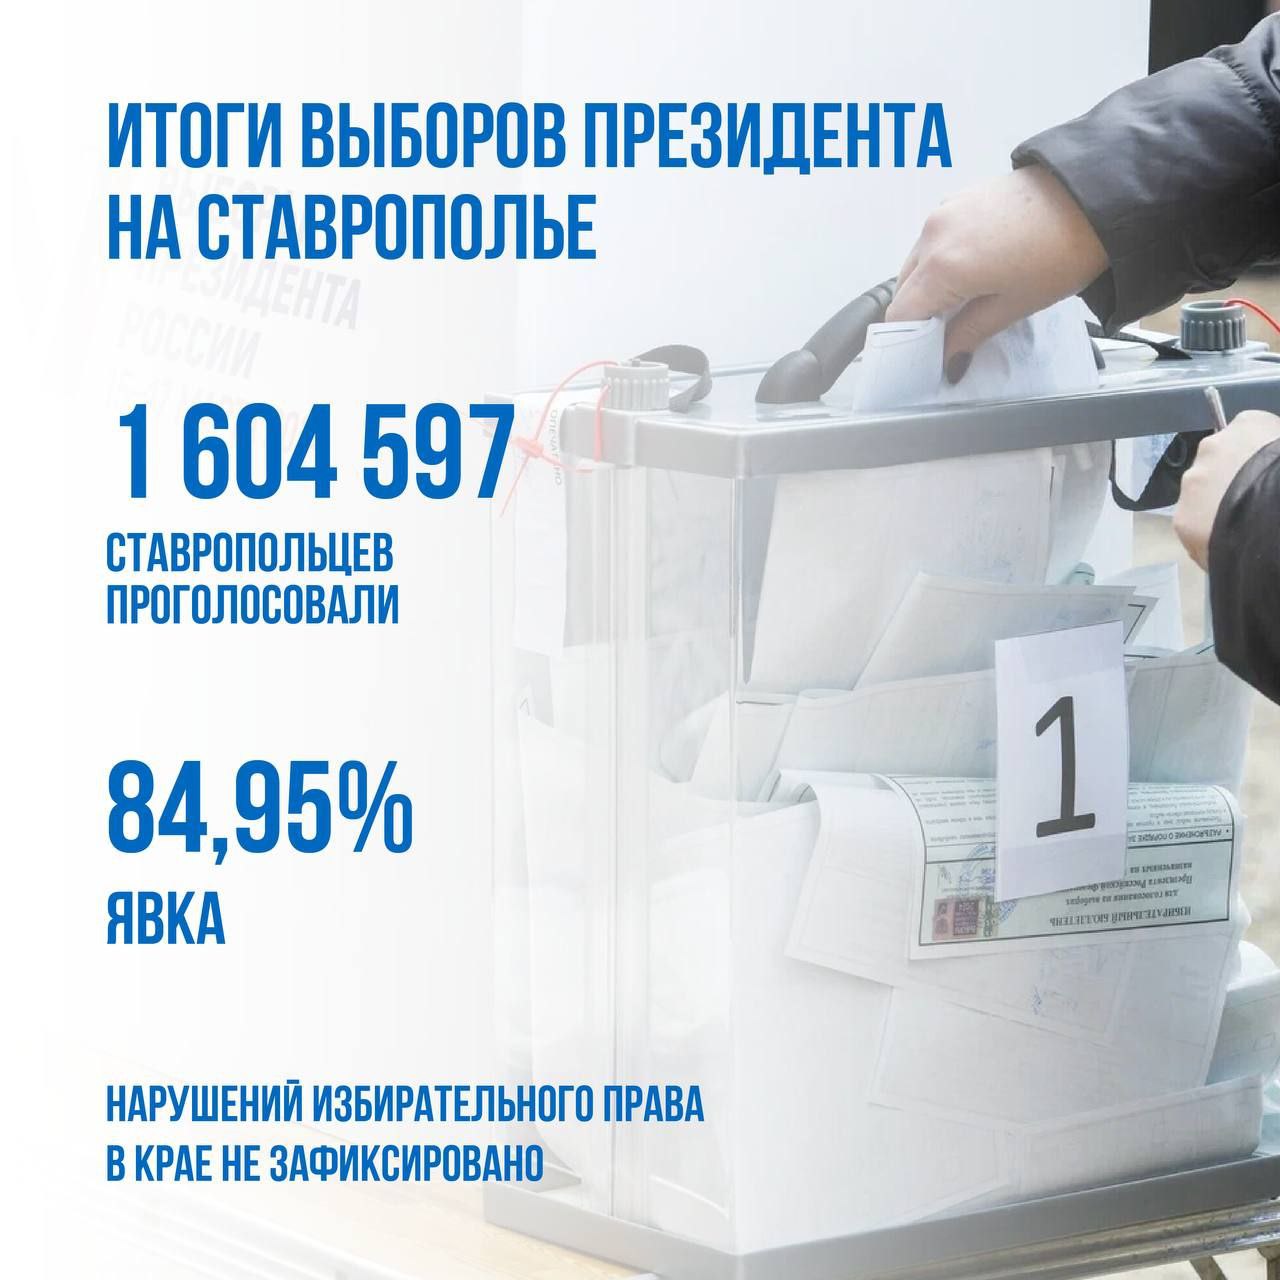 84,95% избирателей проголосовали на Ставрополье.